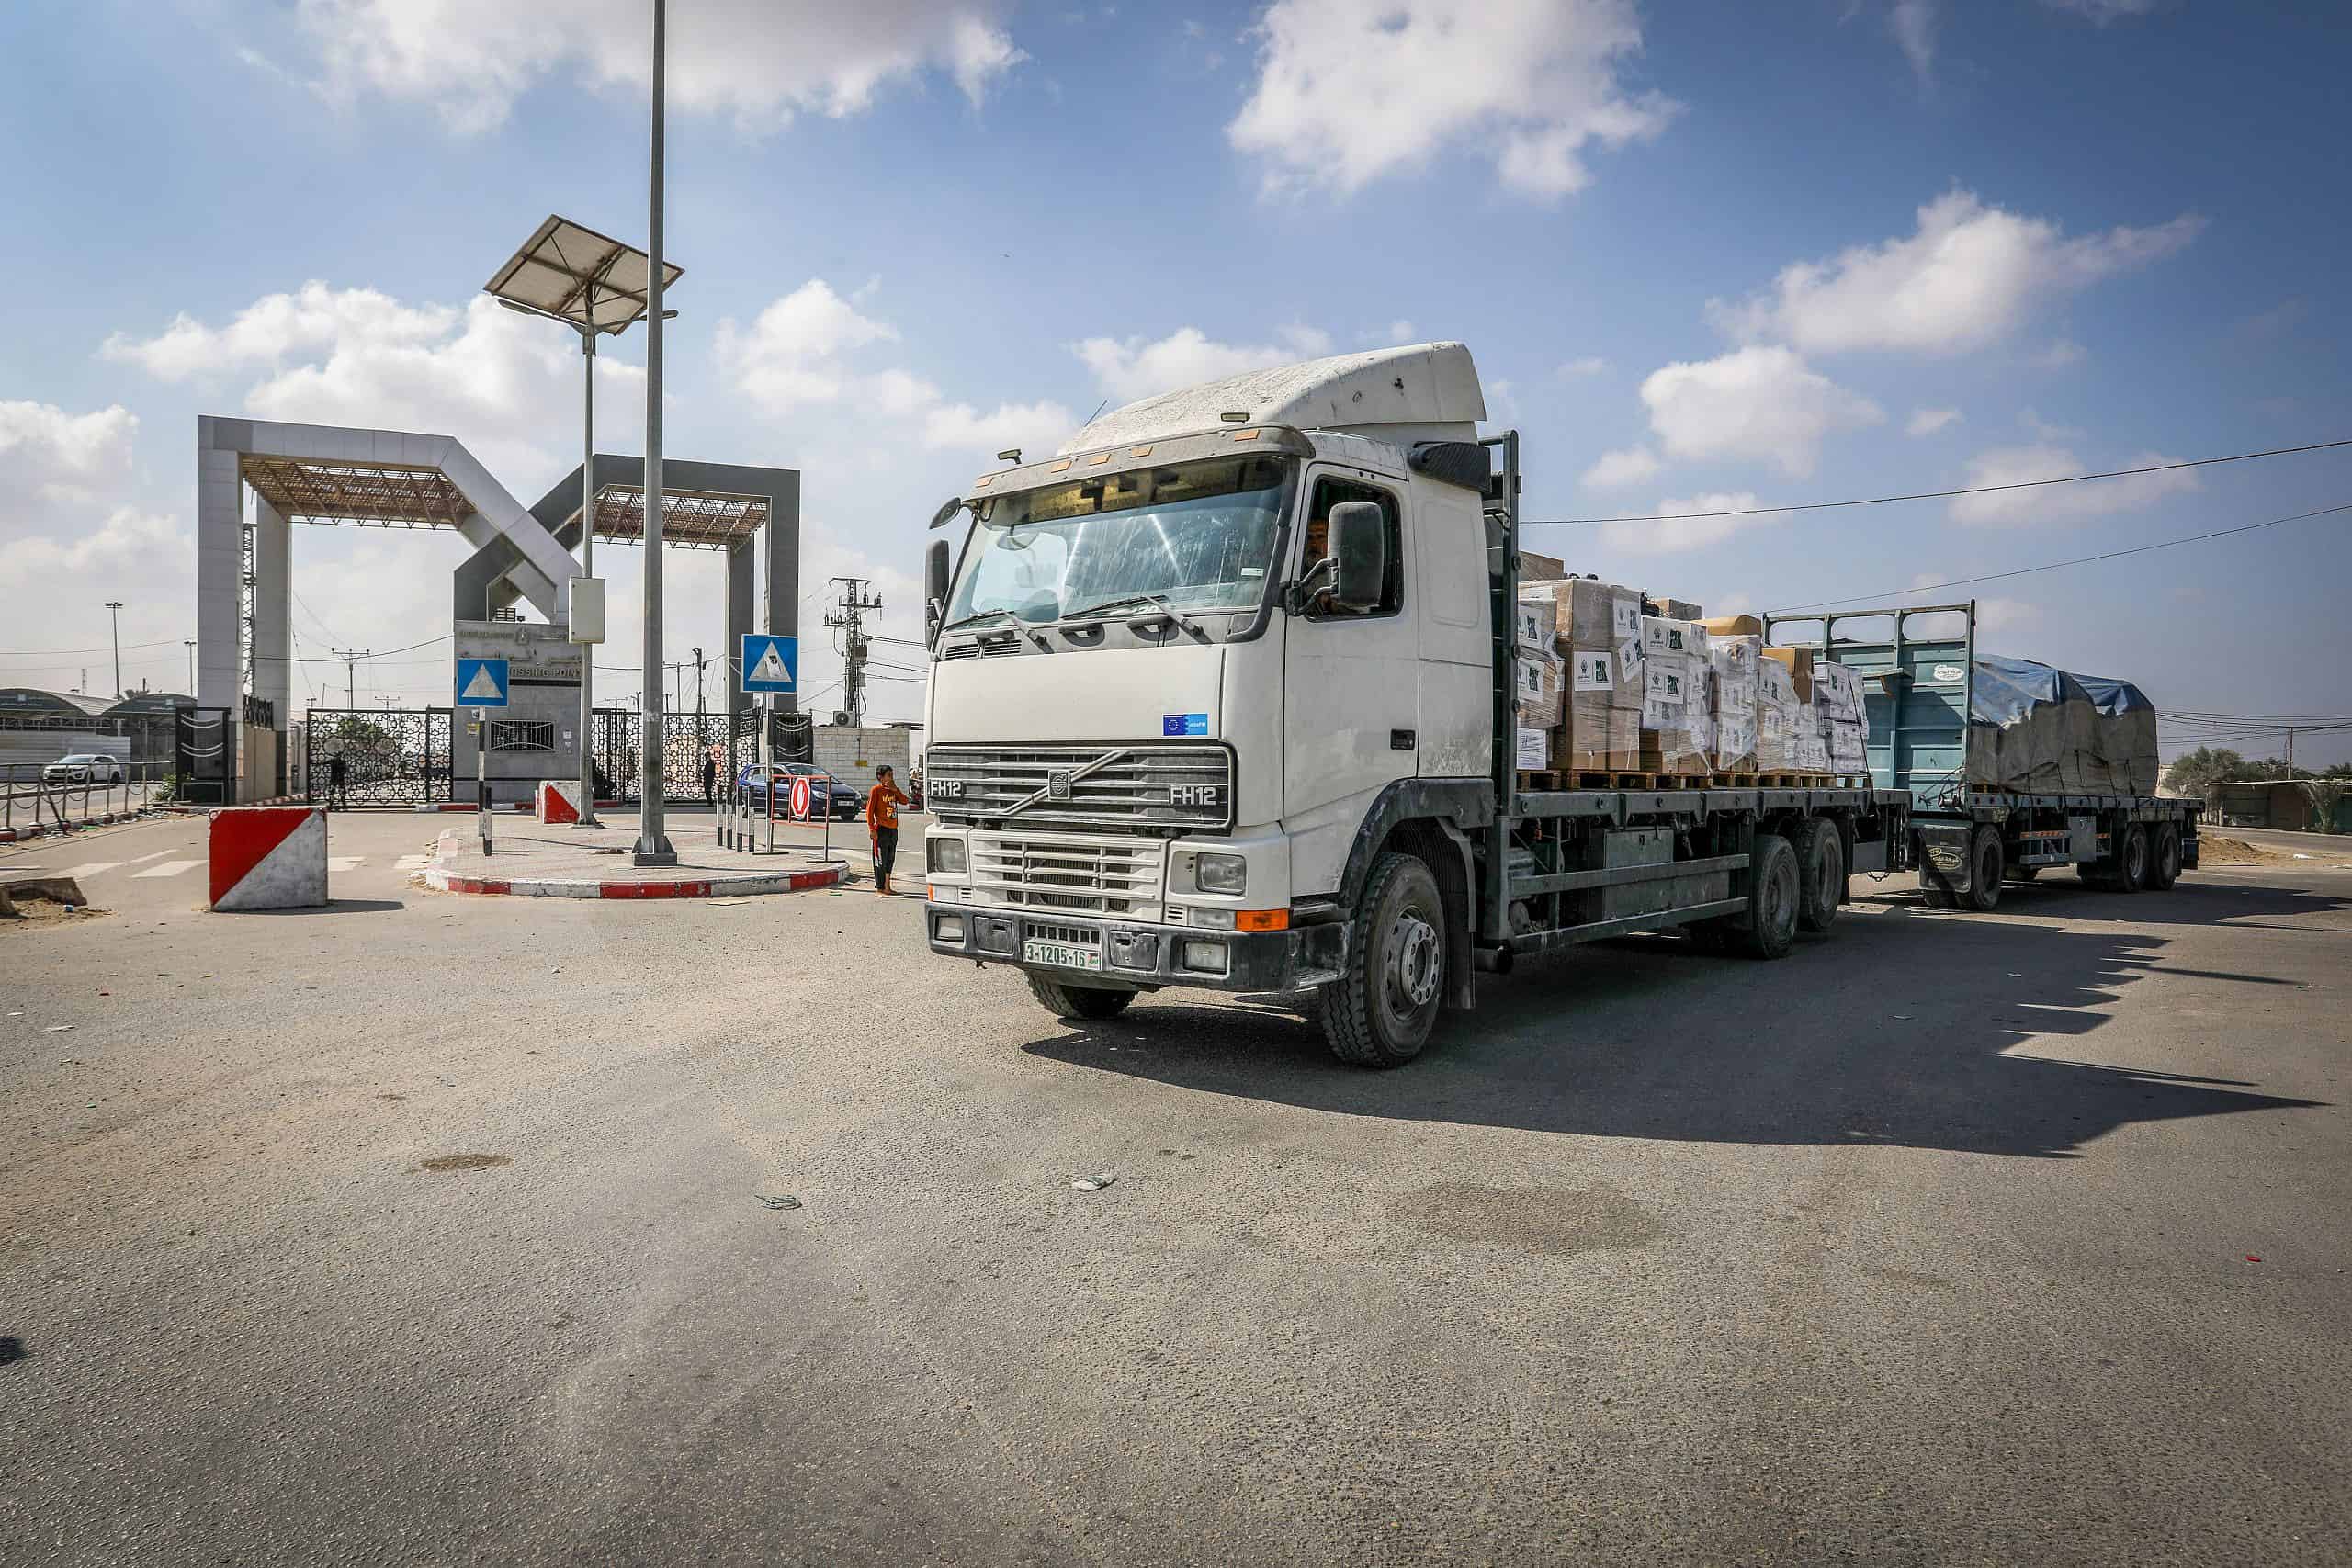 Rafah border crossing trucks